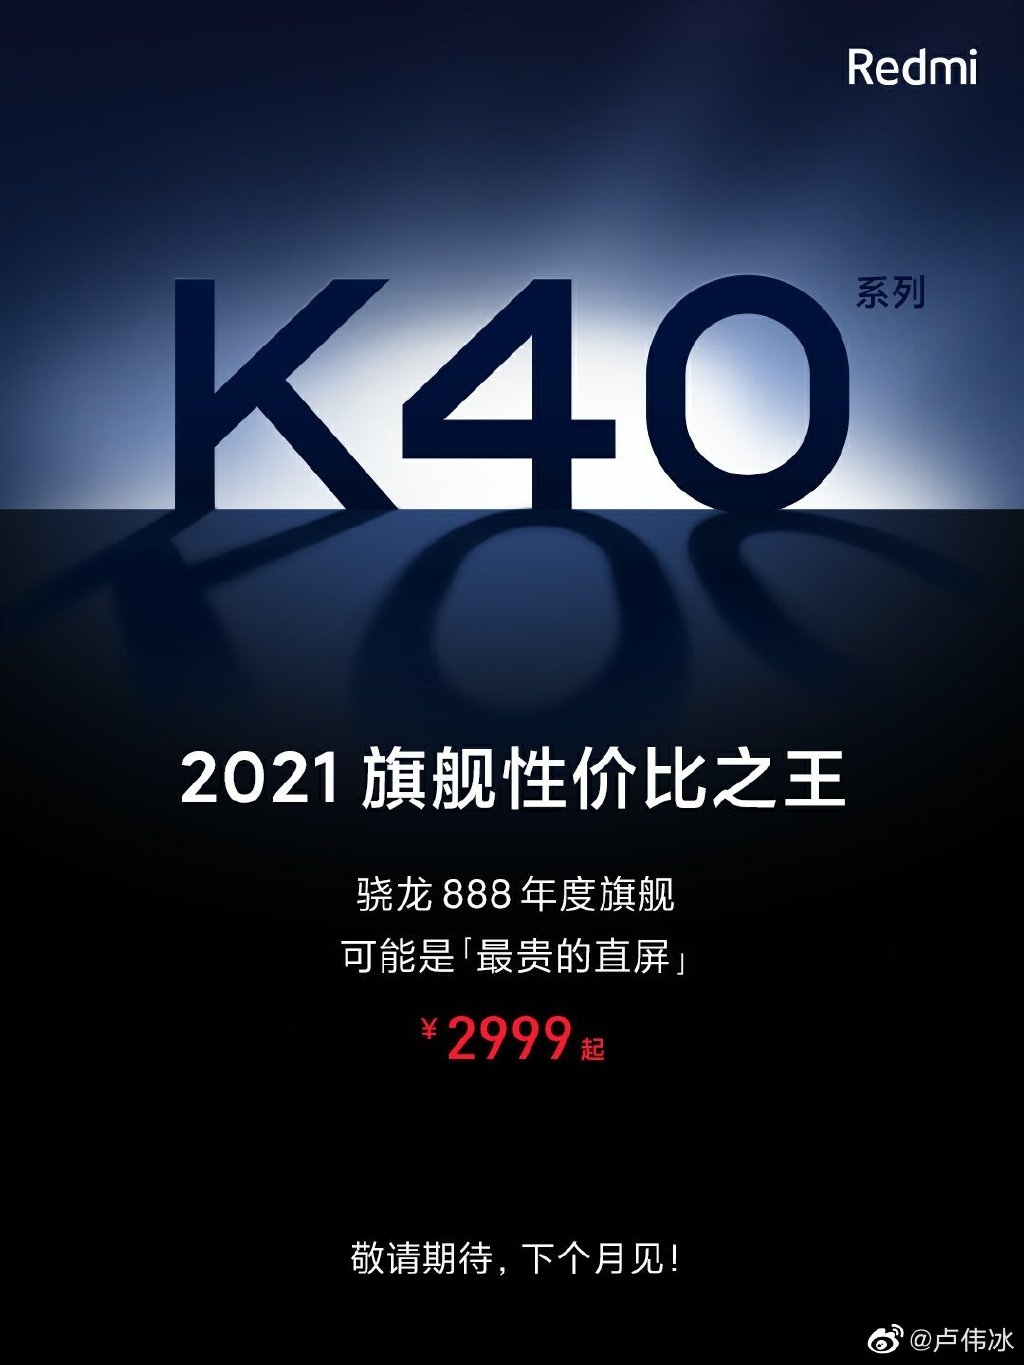 Redmi K40系列仅售2999元 让对手胆寒的杀手级产品